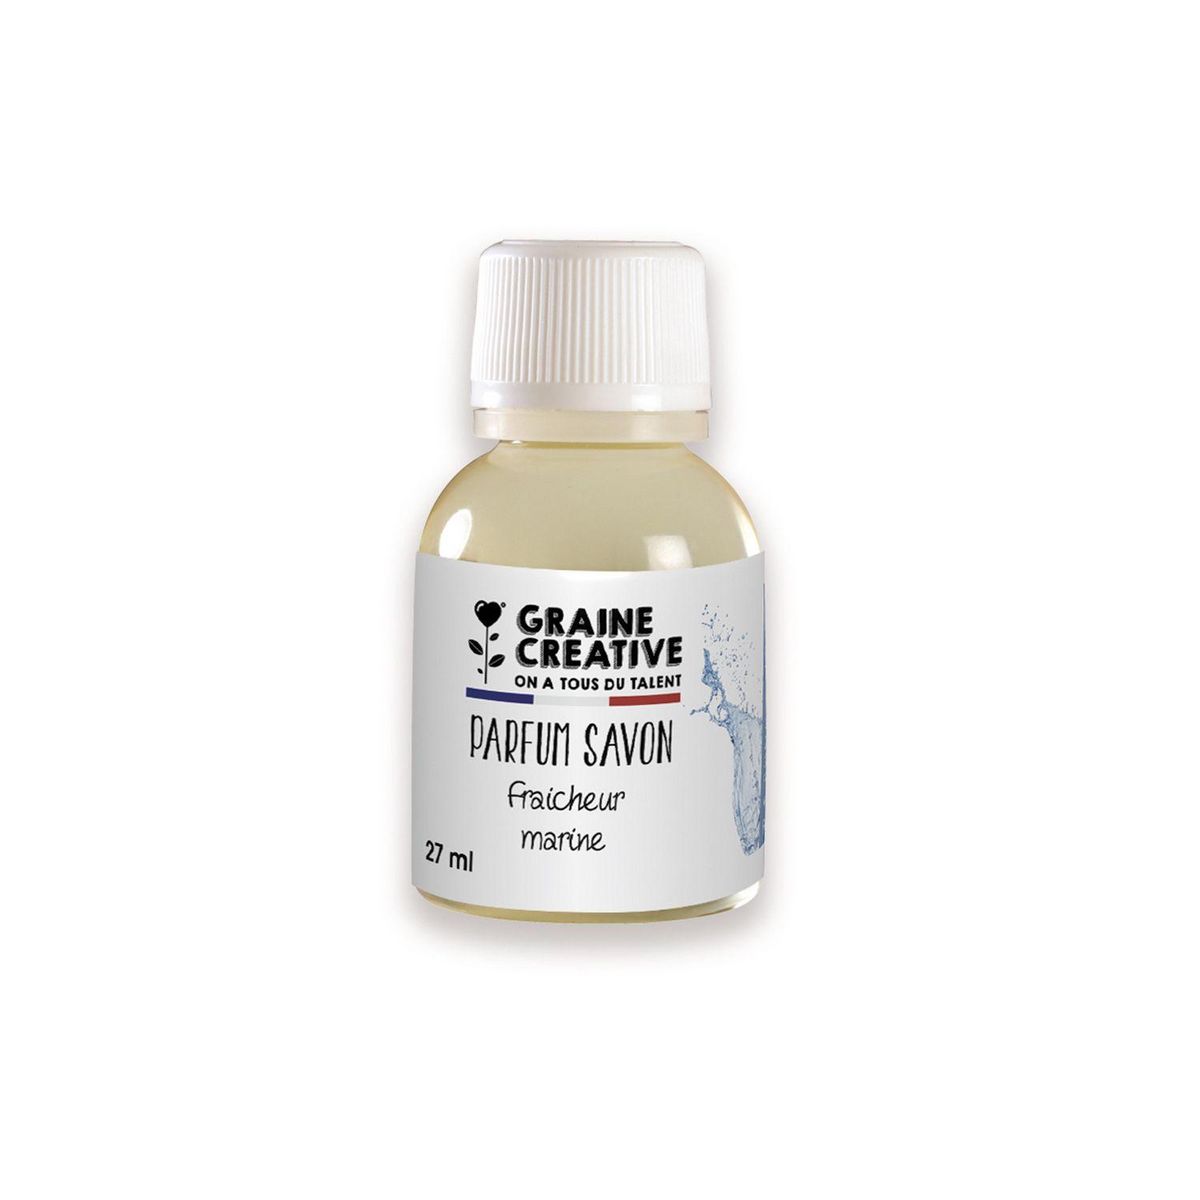 Graine créative Parfum pour savon - Fraîcheur marine 27 ml